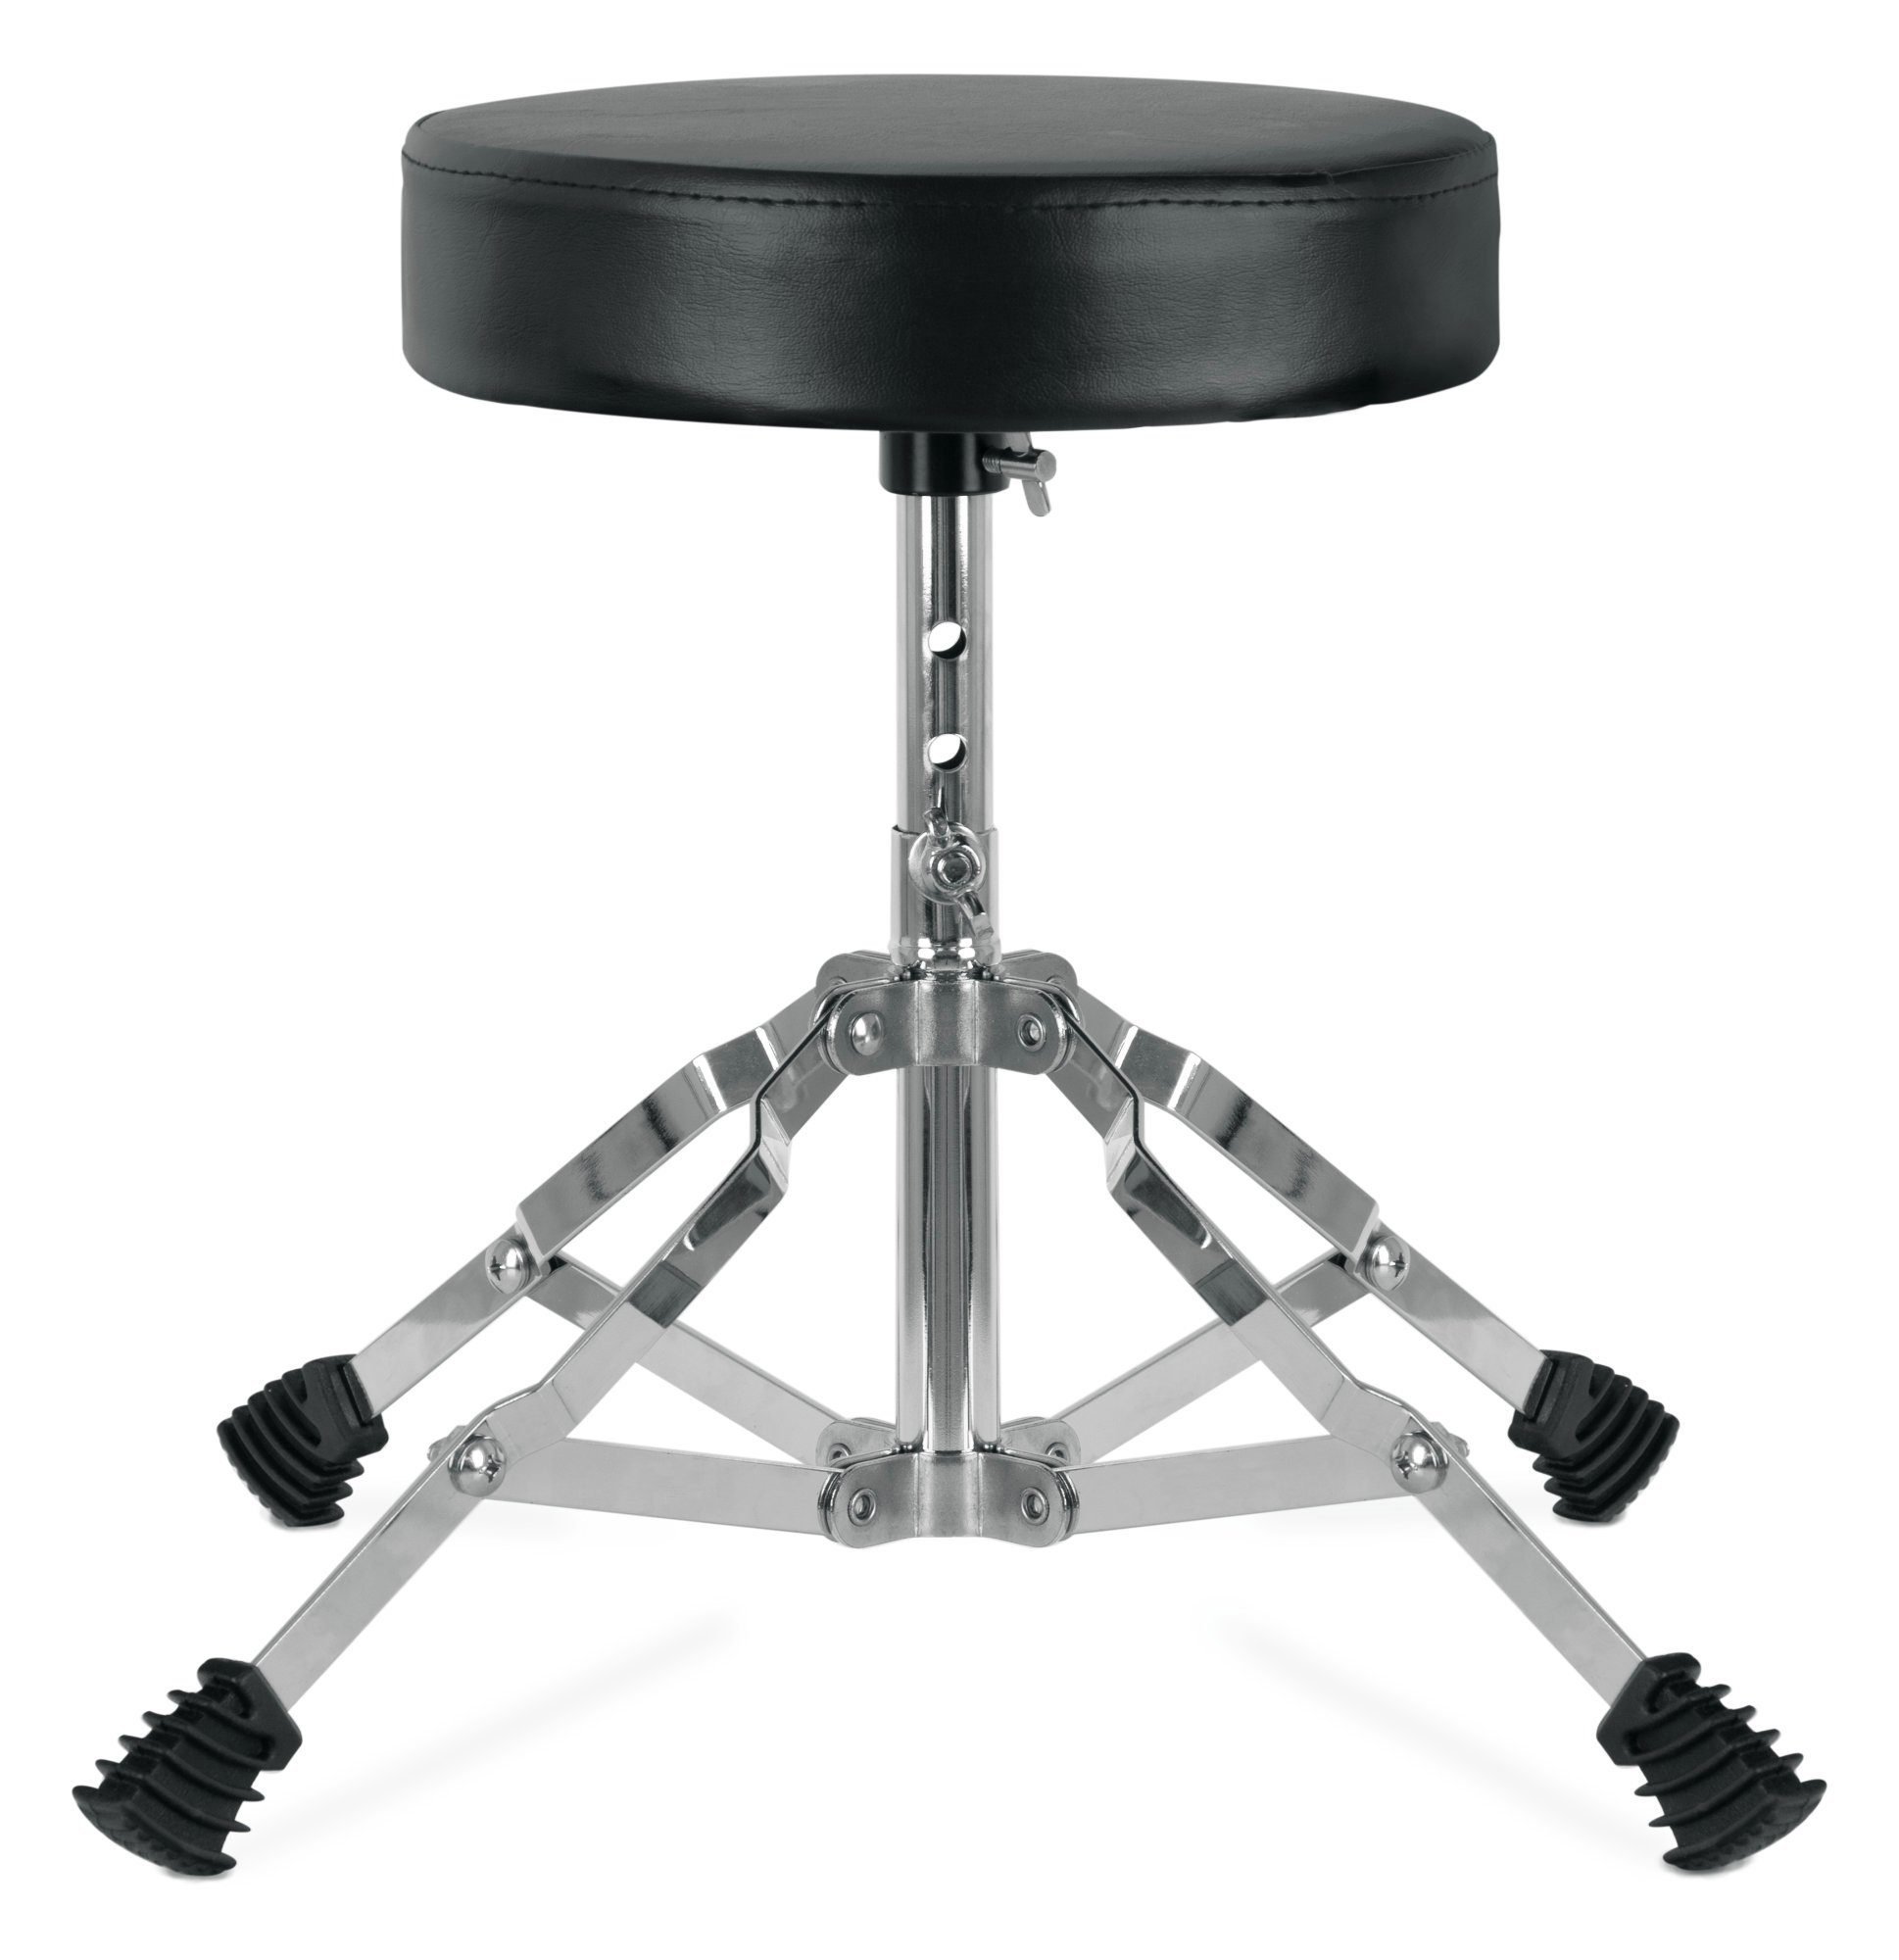 XDrum Schlagzeughocker Drumhocker Junior - Drum Stool für Kinder, 3-Fach Höhenverstellbar von 32cm-37cm